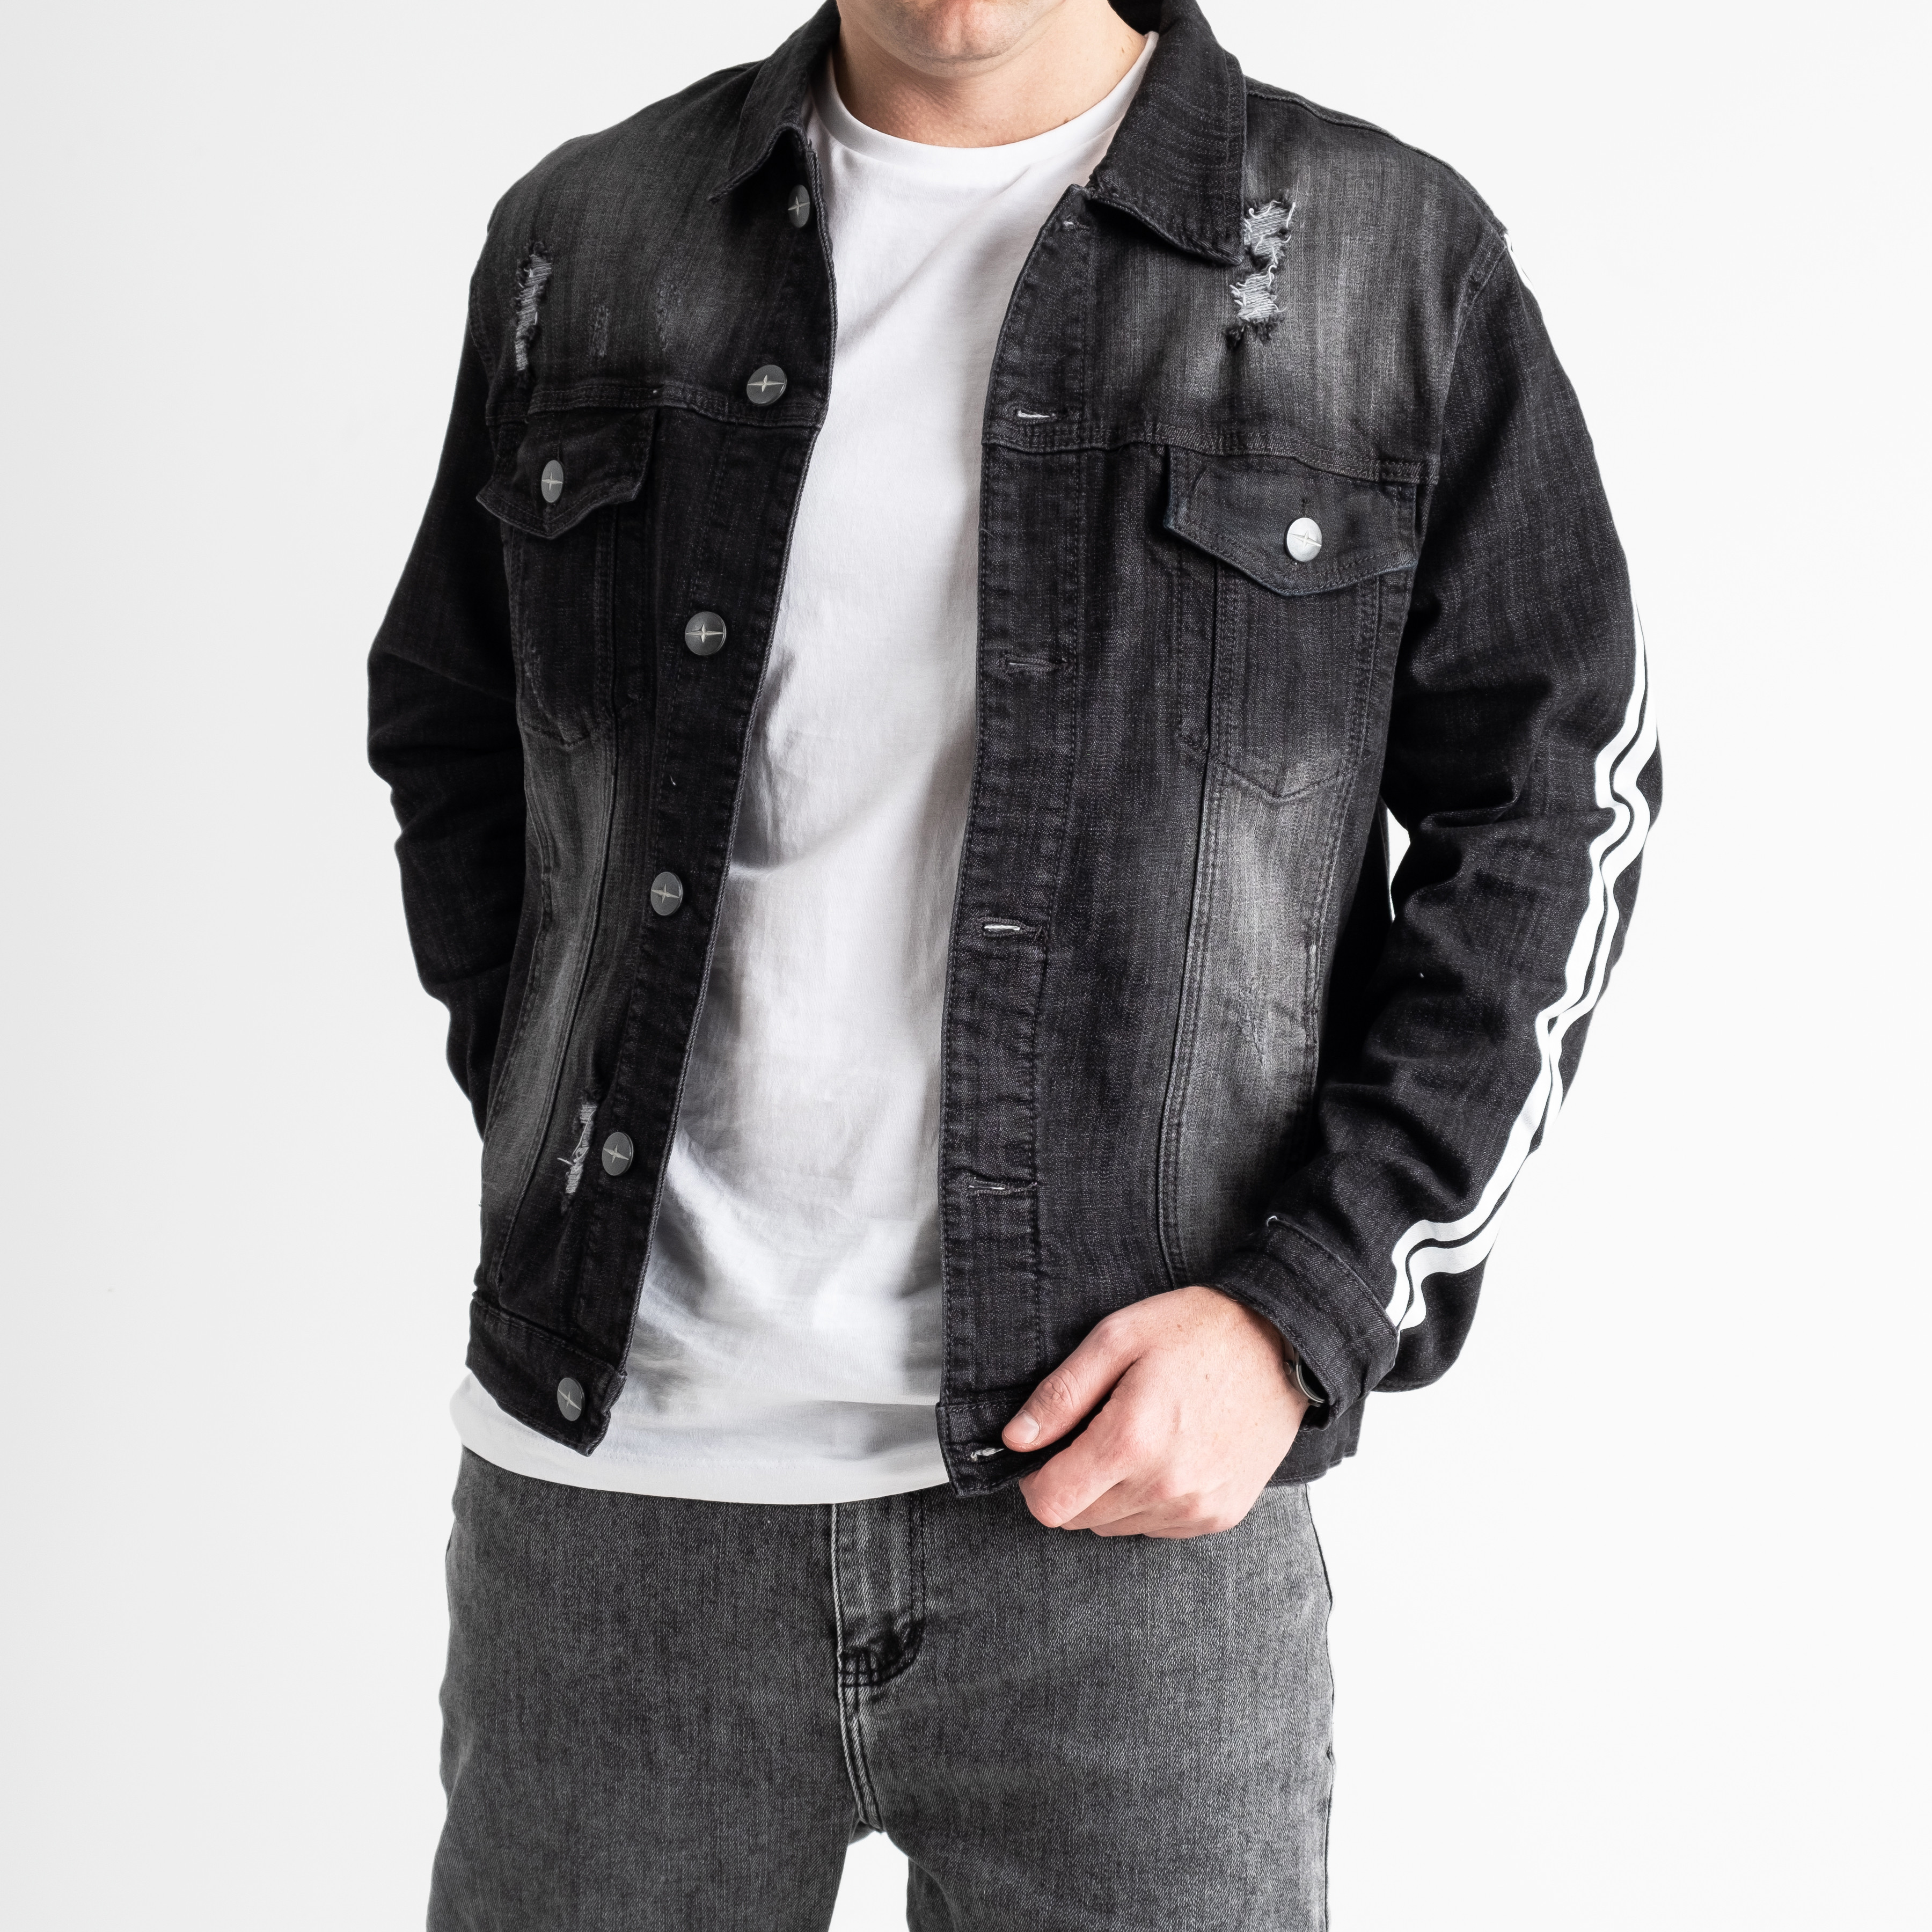 0015-12 Just Boy джинсовая куртка мужская серая котоновая (3 ед.размеры: L.XL.2XL)